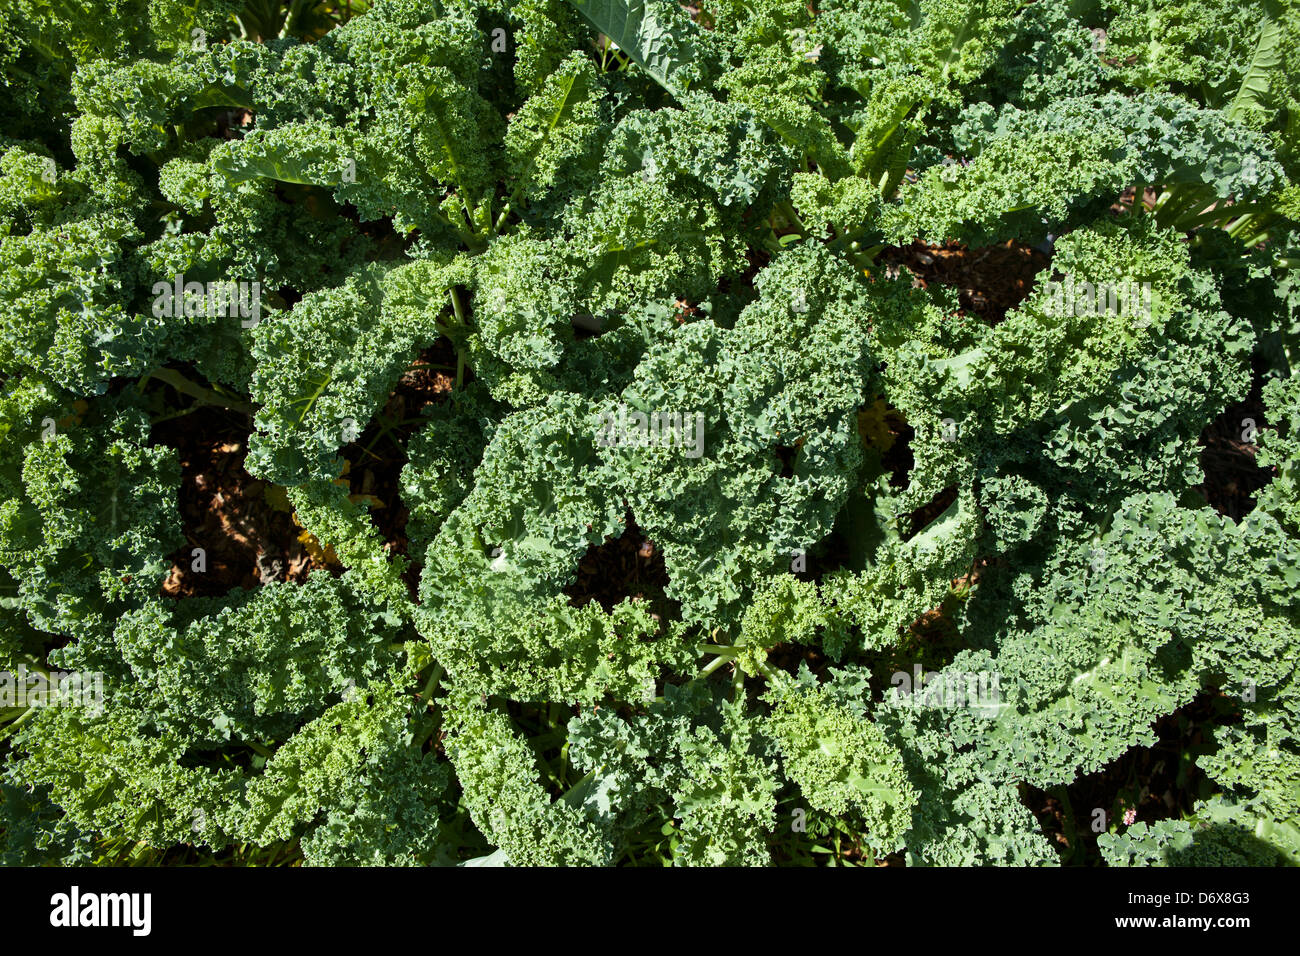 kale in garden Stock Photo